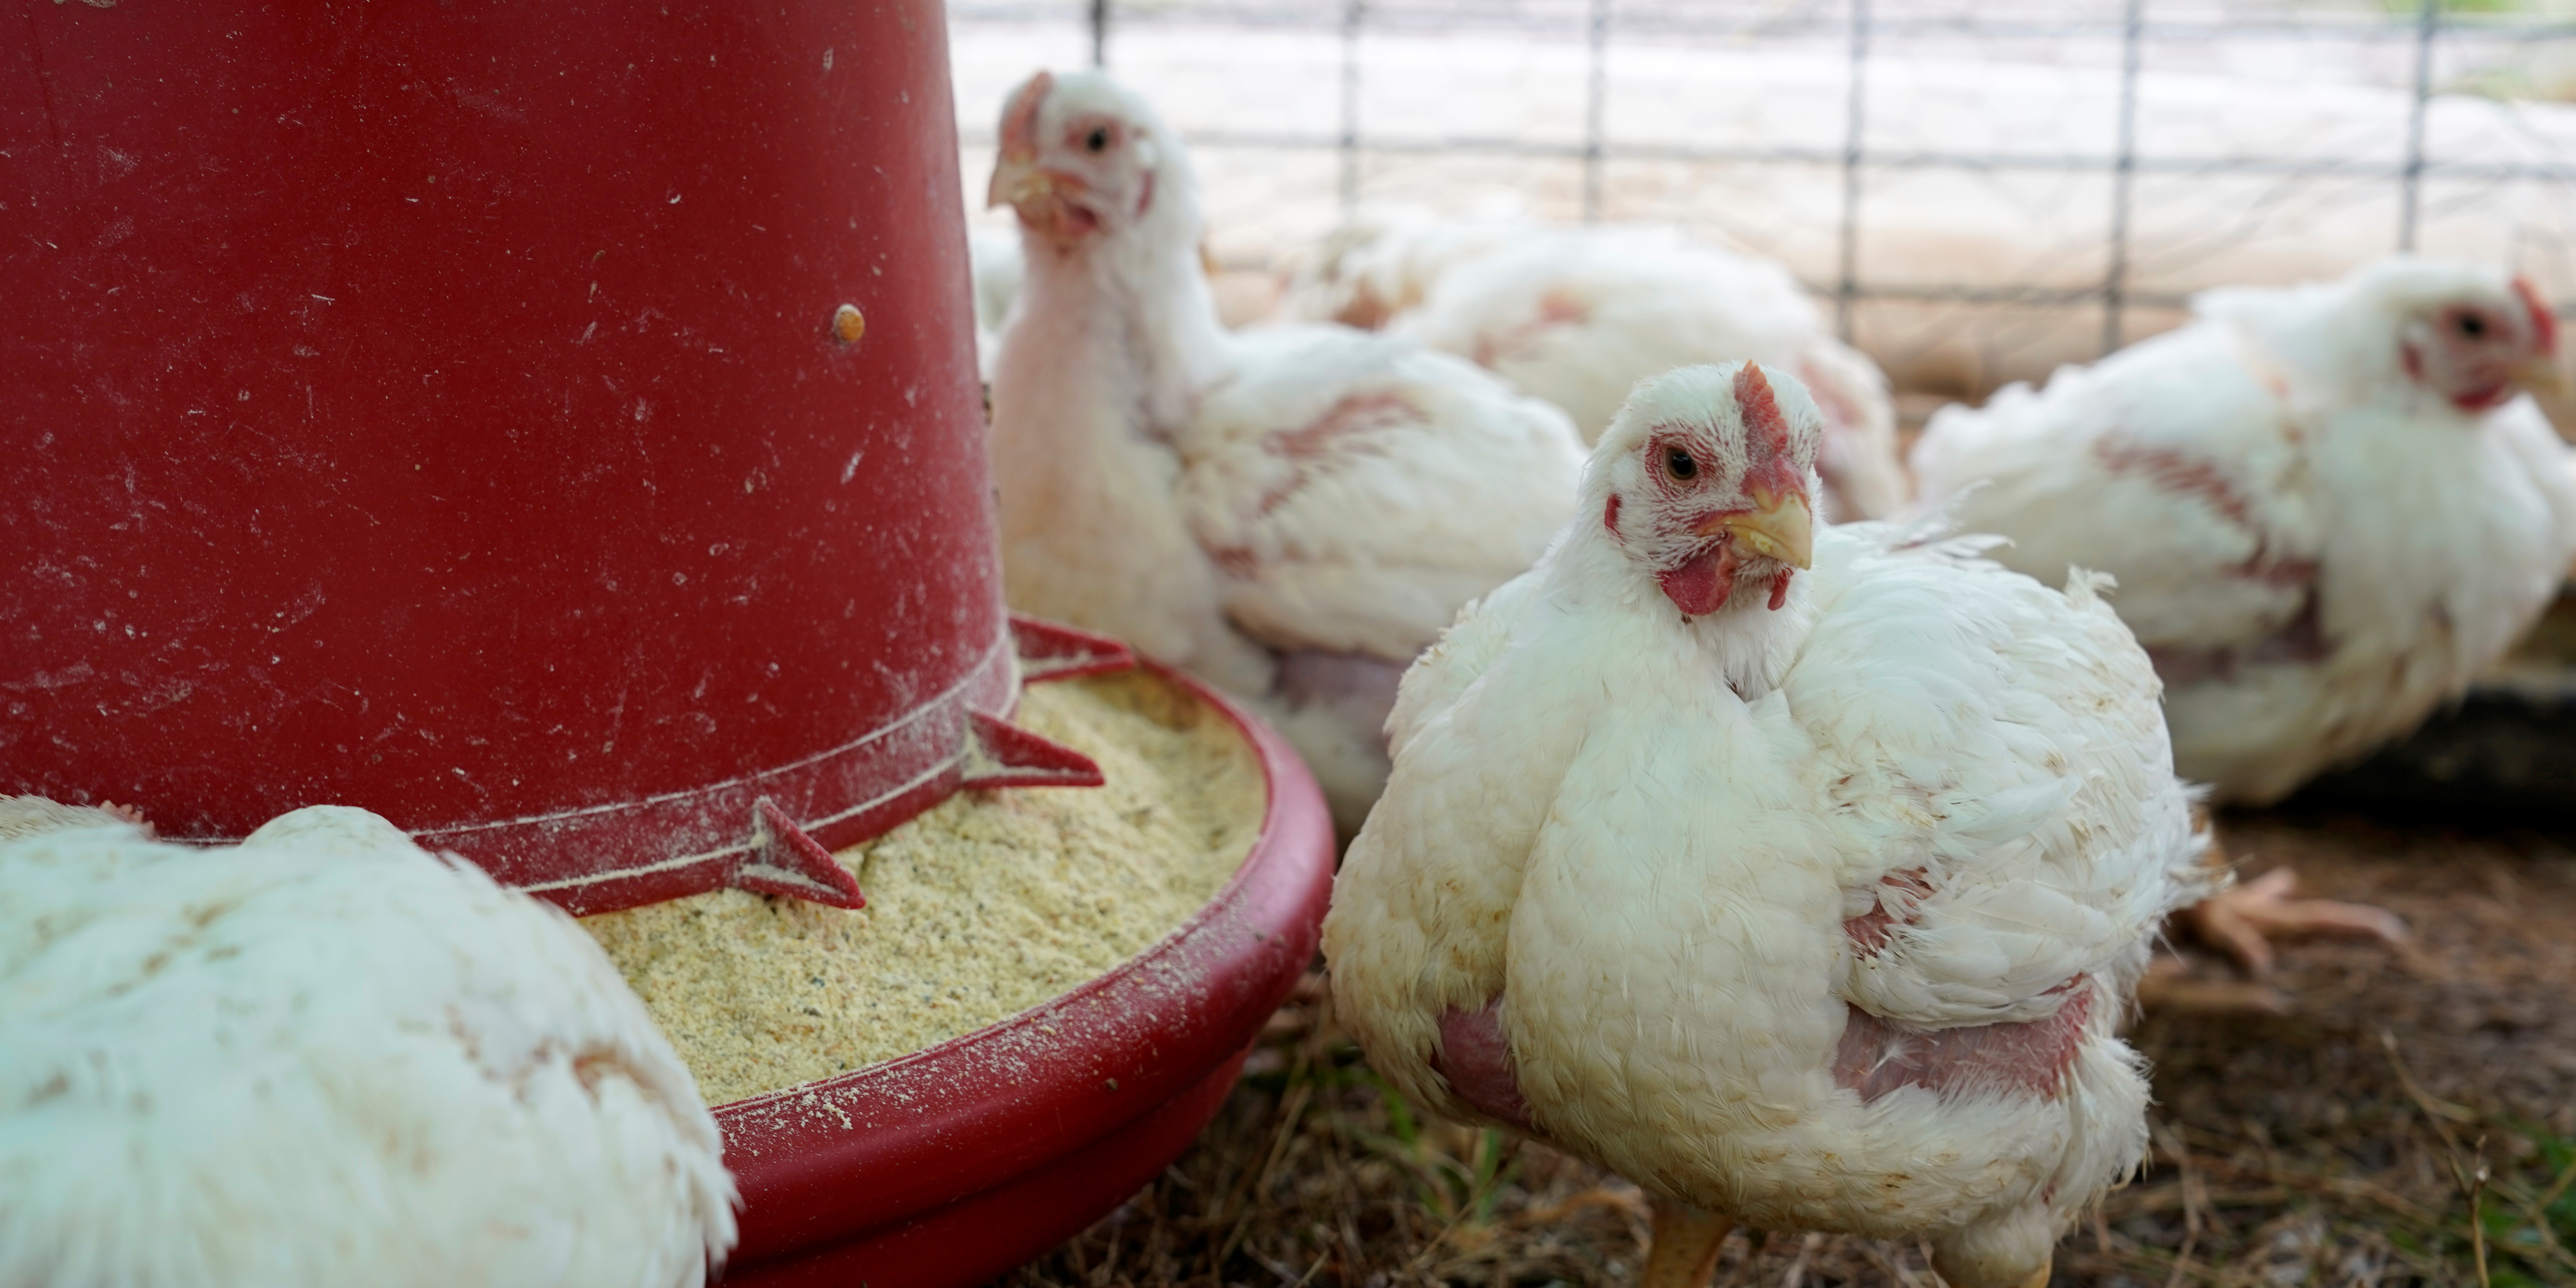 Un foyer de grippe aviaire détecté dans le département du Nord